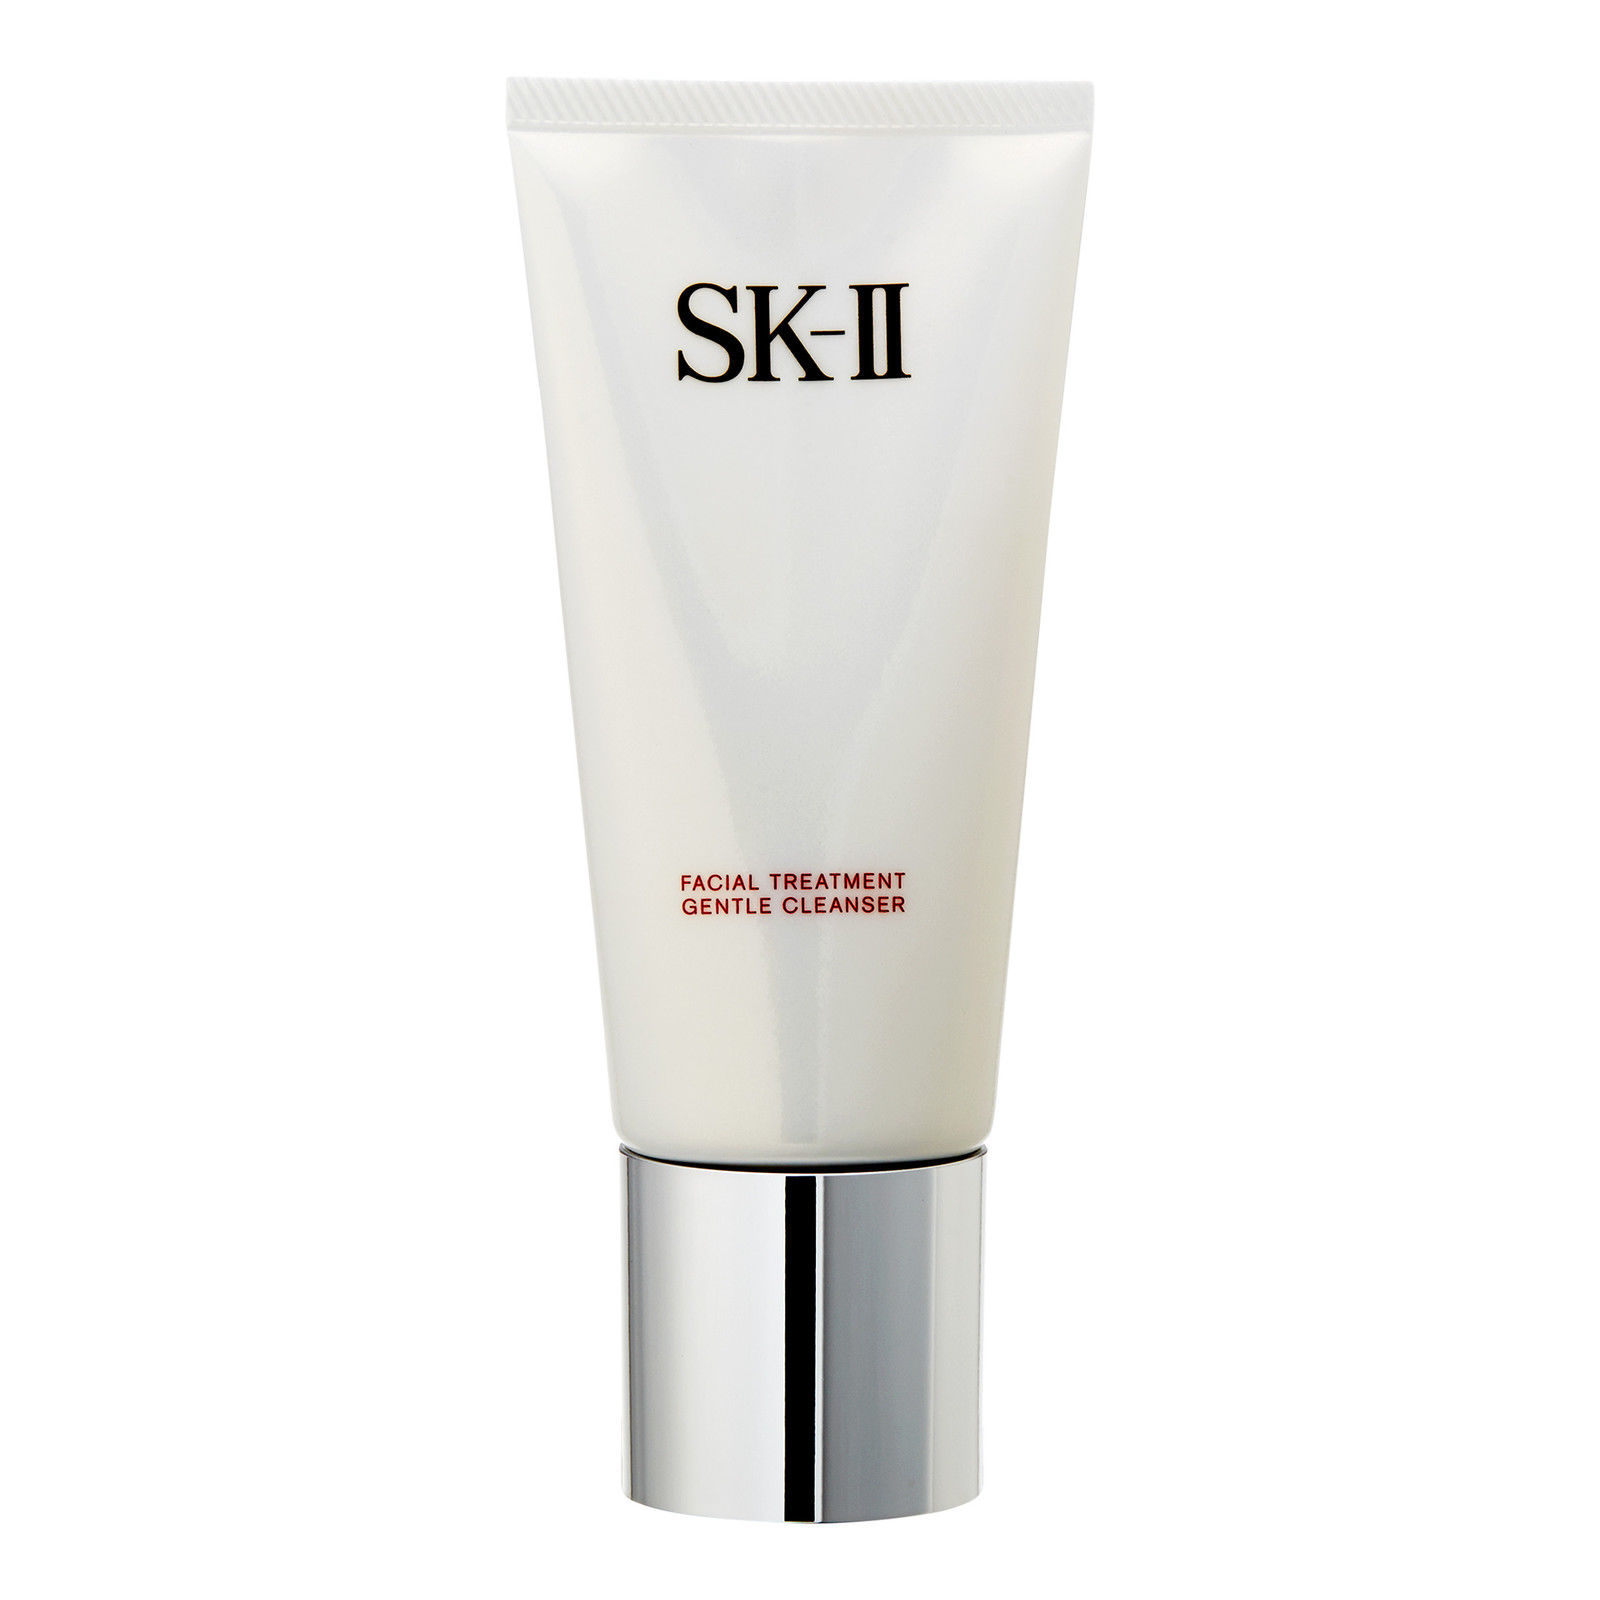 SK-II | SK2舒透护肤洁面霜120g保湿清洁氨基酸洁面乳商品图片,8.1折, 2件9.8折, 包邮包税, 满折